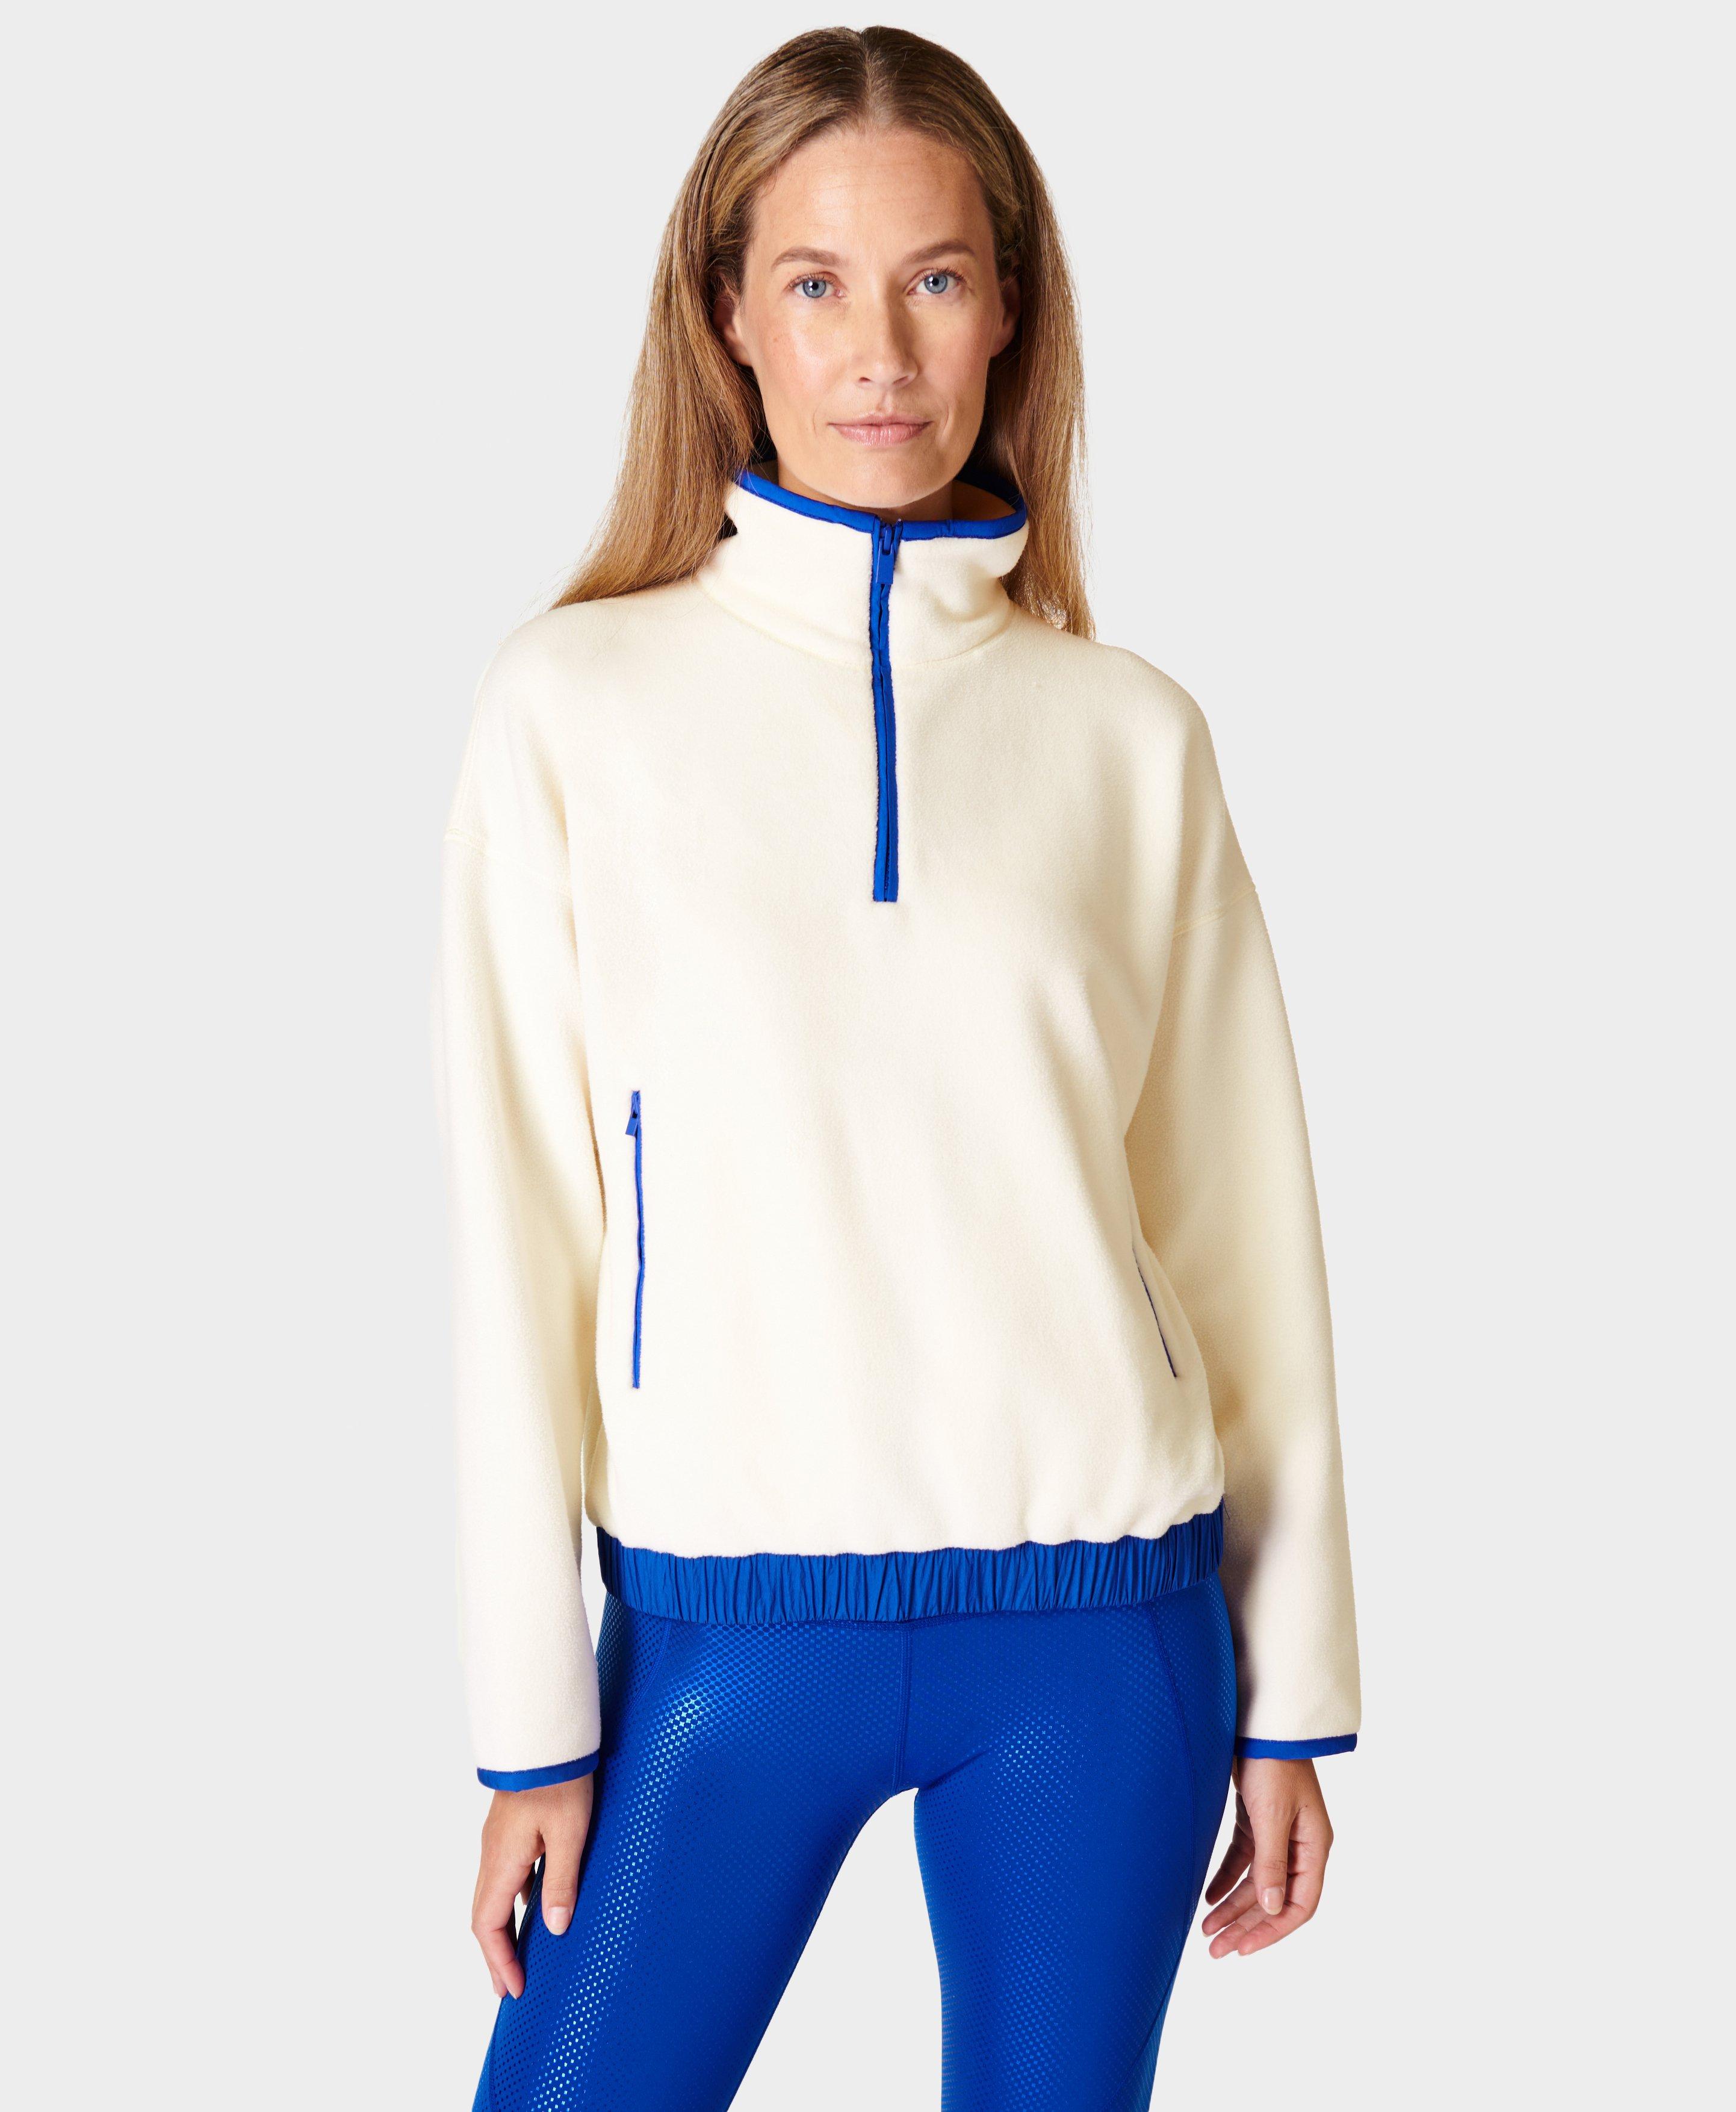 Mallow Fleece Half Zip Pullover - Studio White, Women's Sweaters + Hoodies